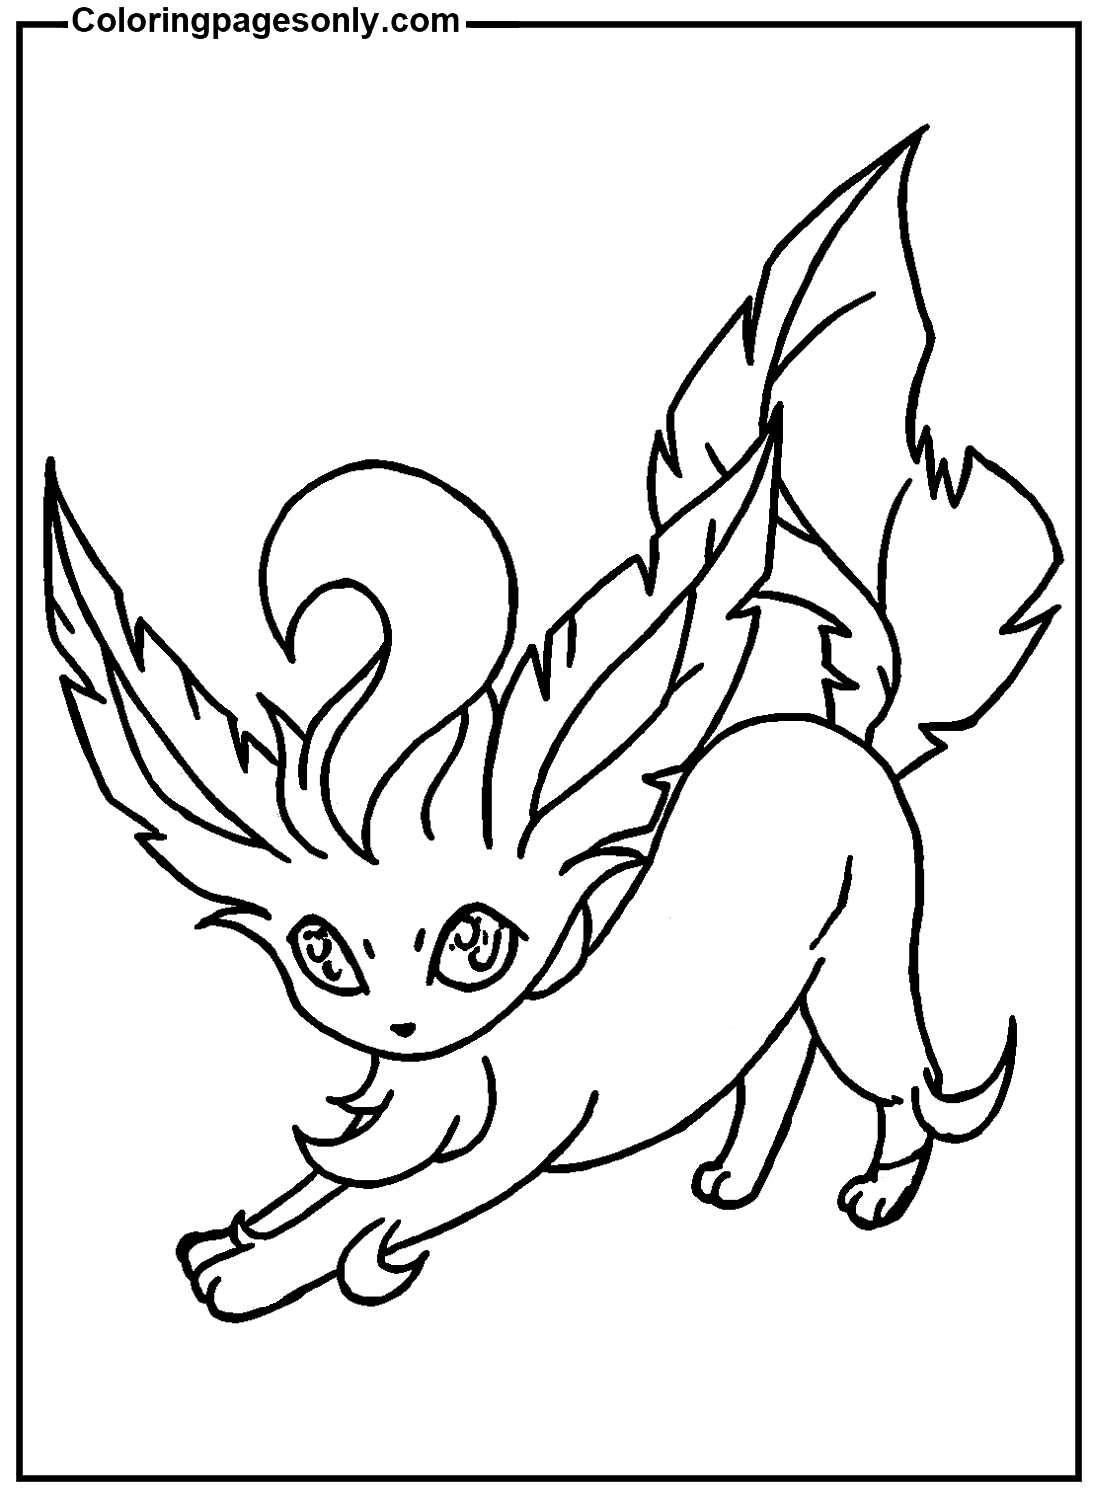 Imagen de Pokémon Leafeon de Leafeon